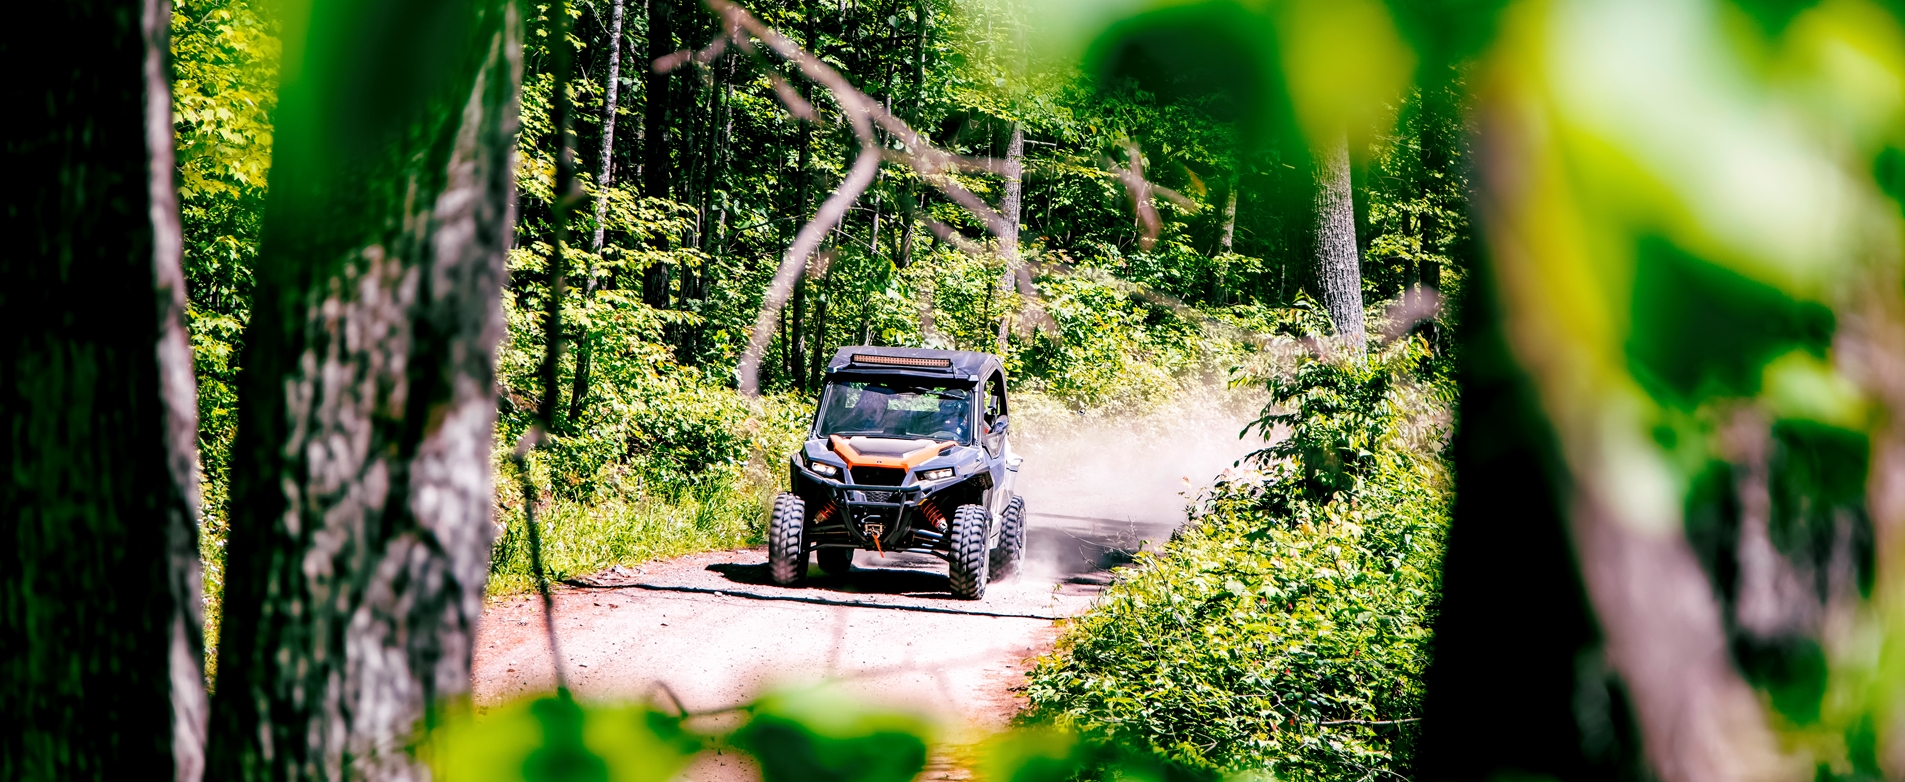 ATV through trees